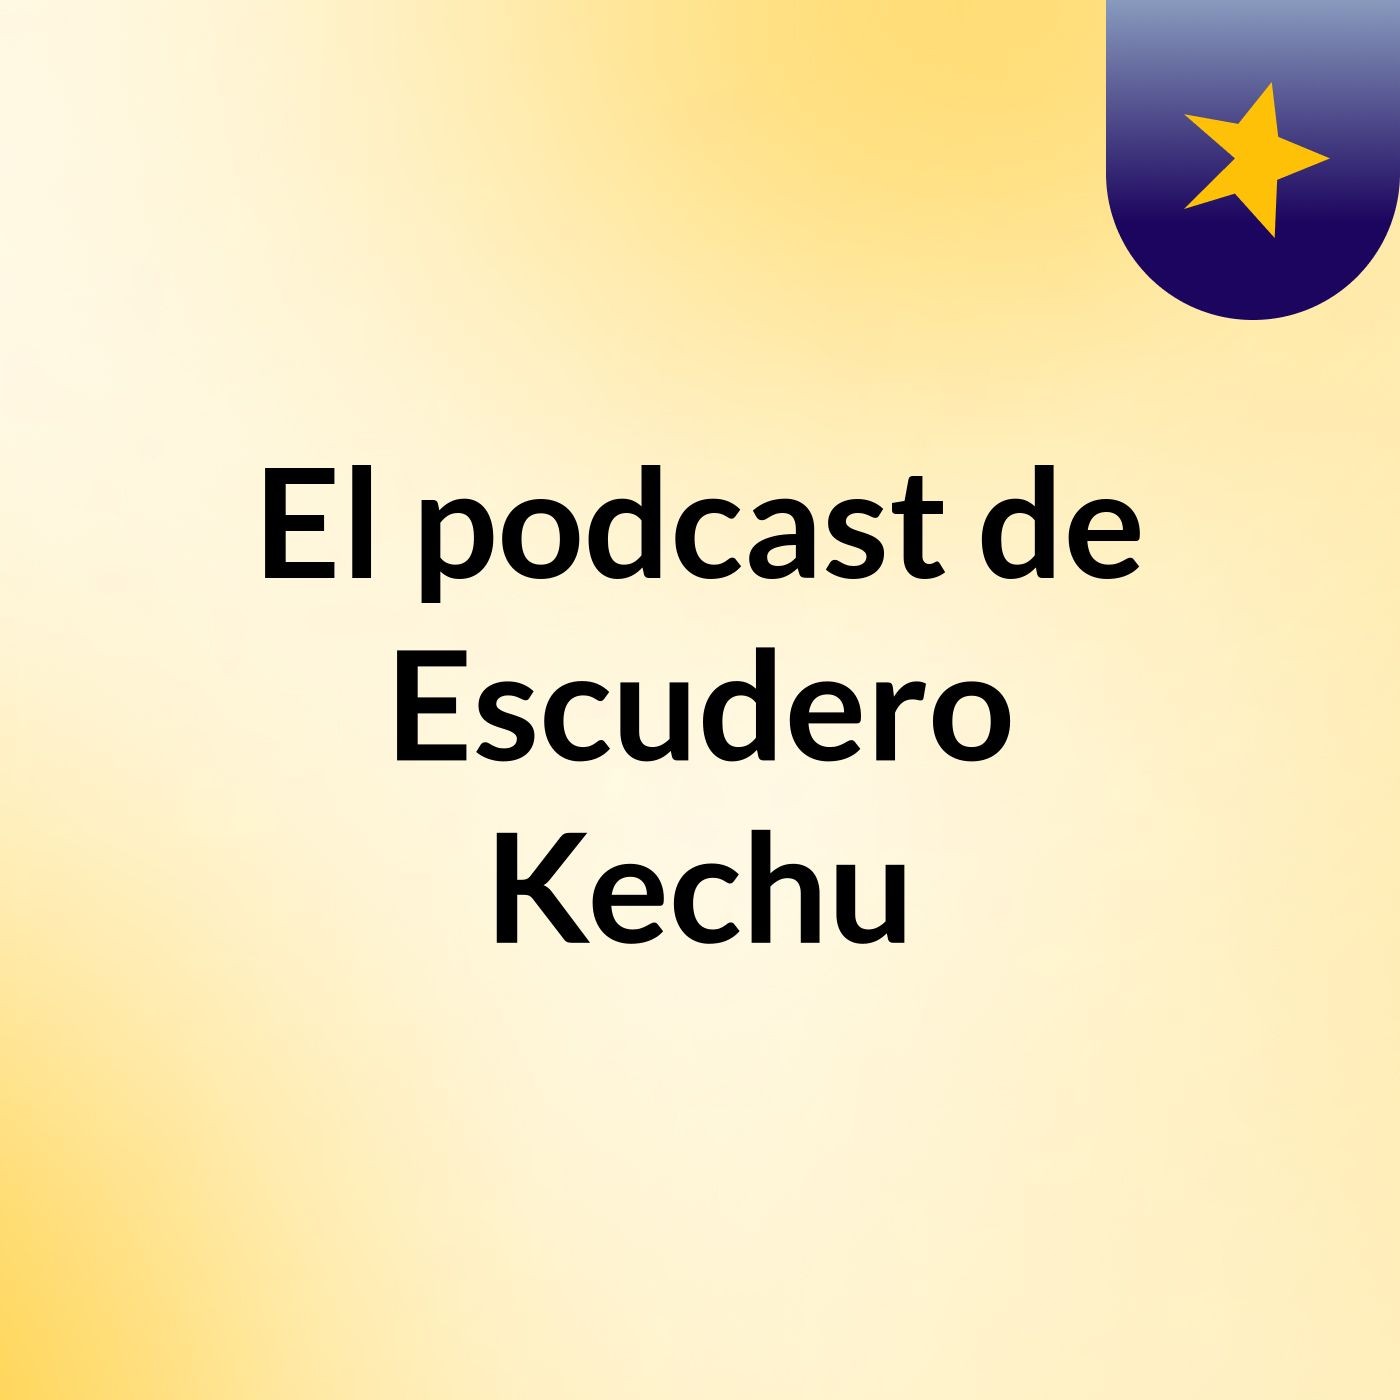 El podcast de Escudero Kechu